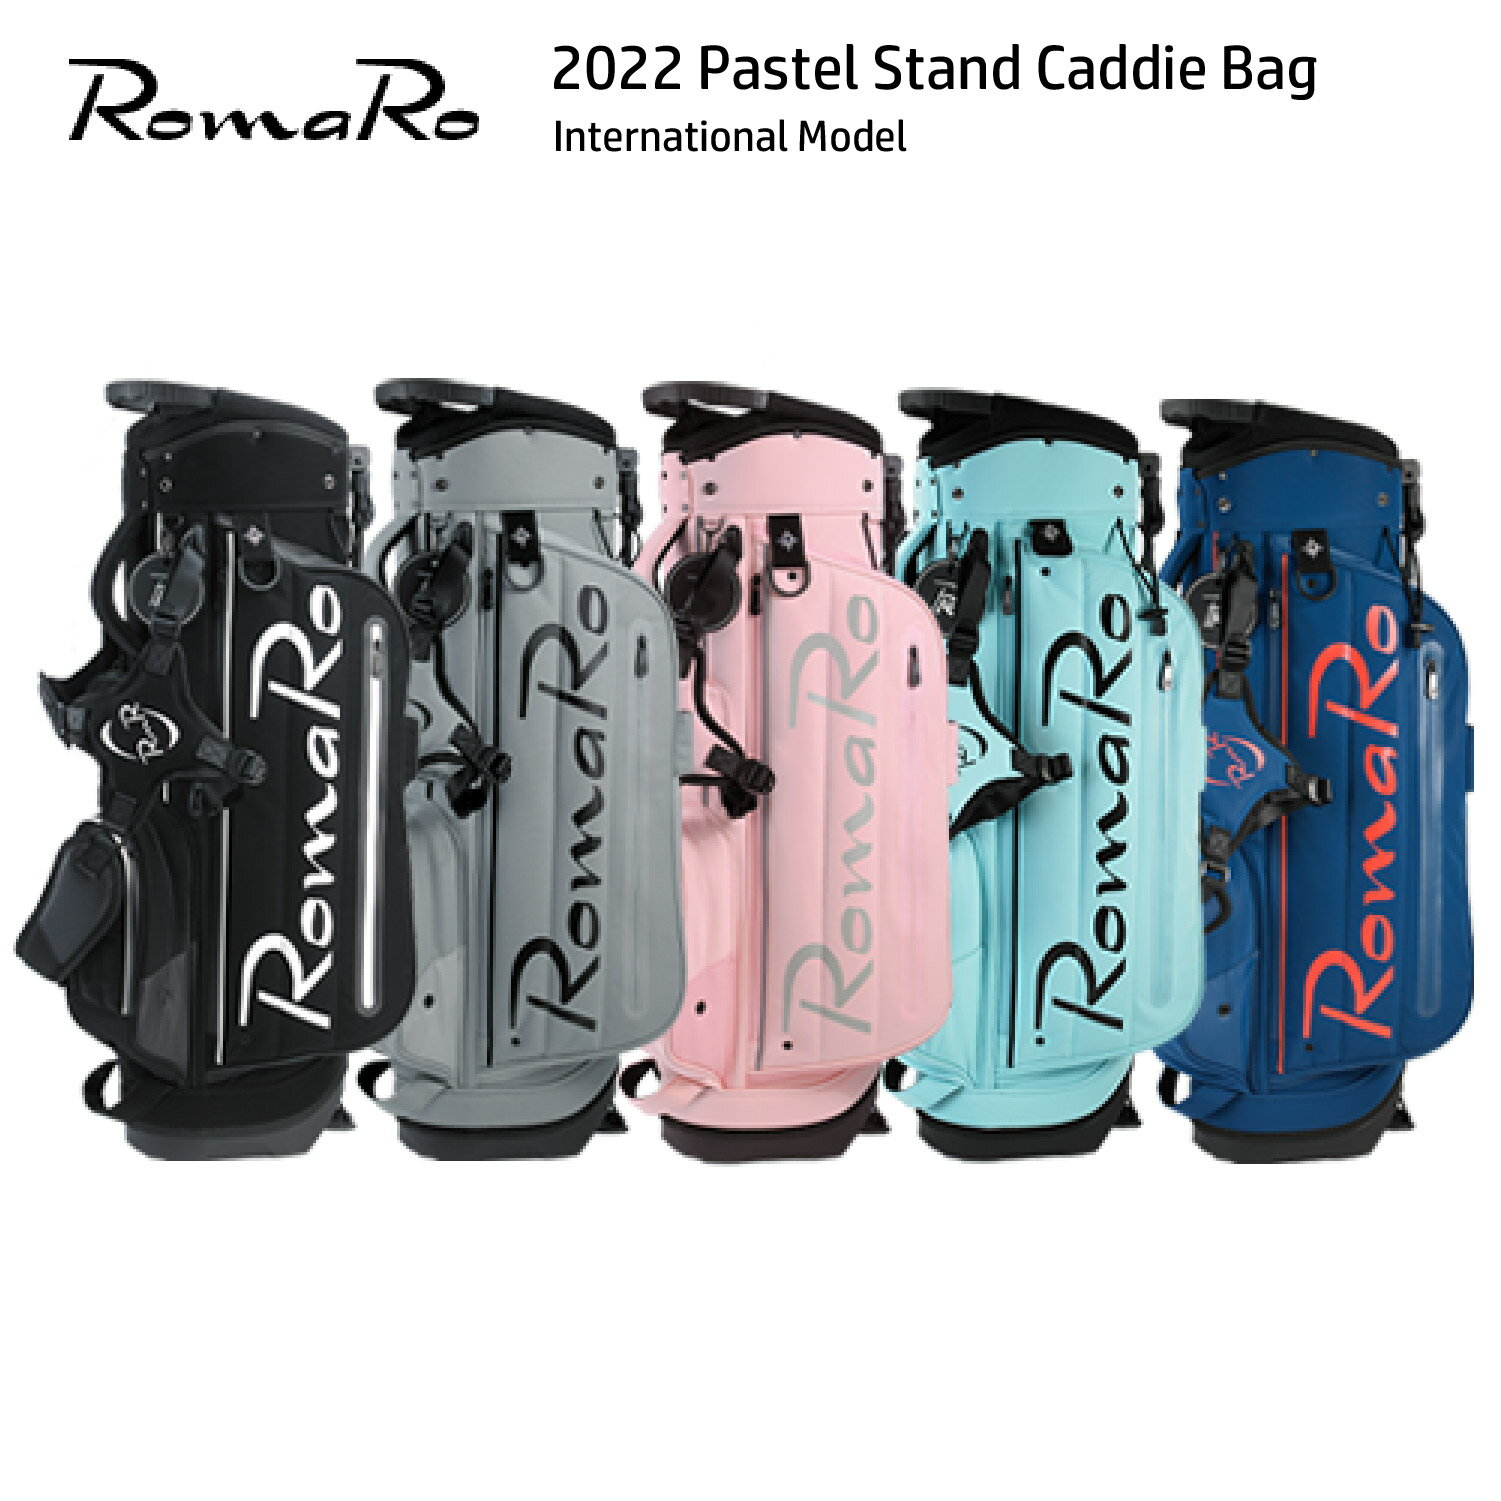 キャディバッグ RomaRo ロマロ 2022 Pastel Stand Caddie Bag パステル International Model インターナショナルモデル ゴルフ スタッフバッグ 8.5型